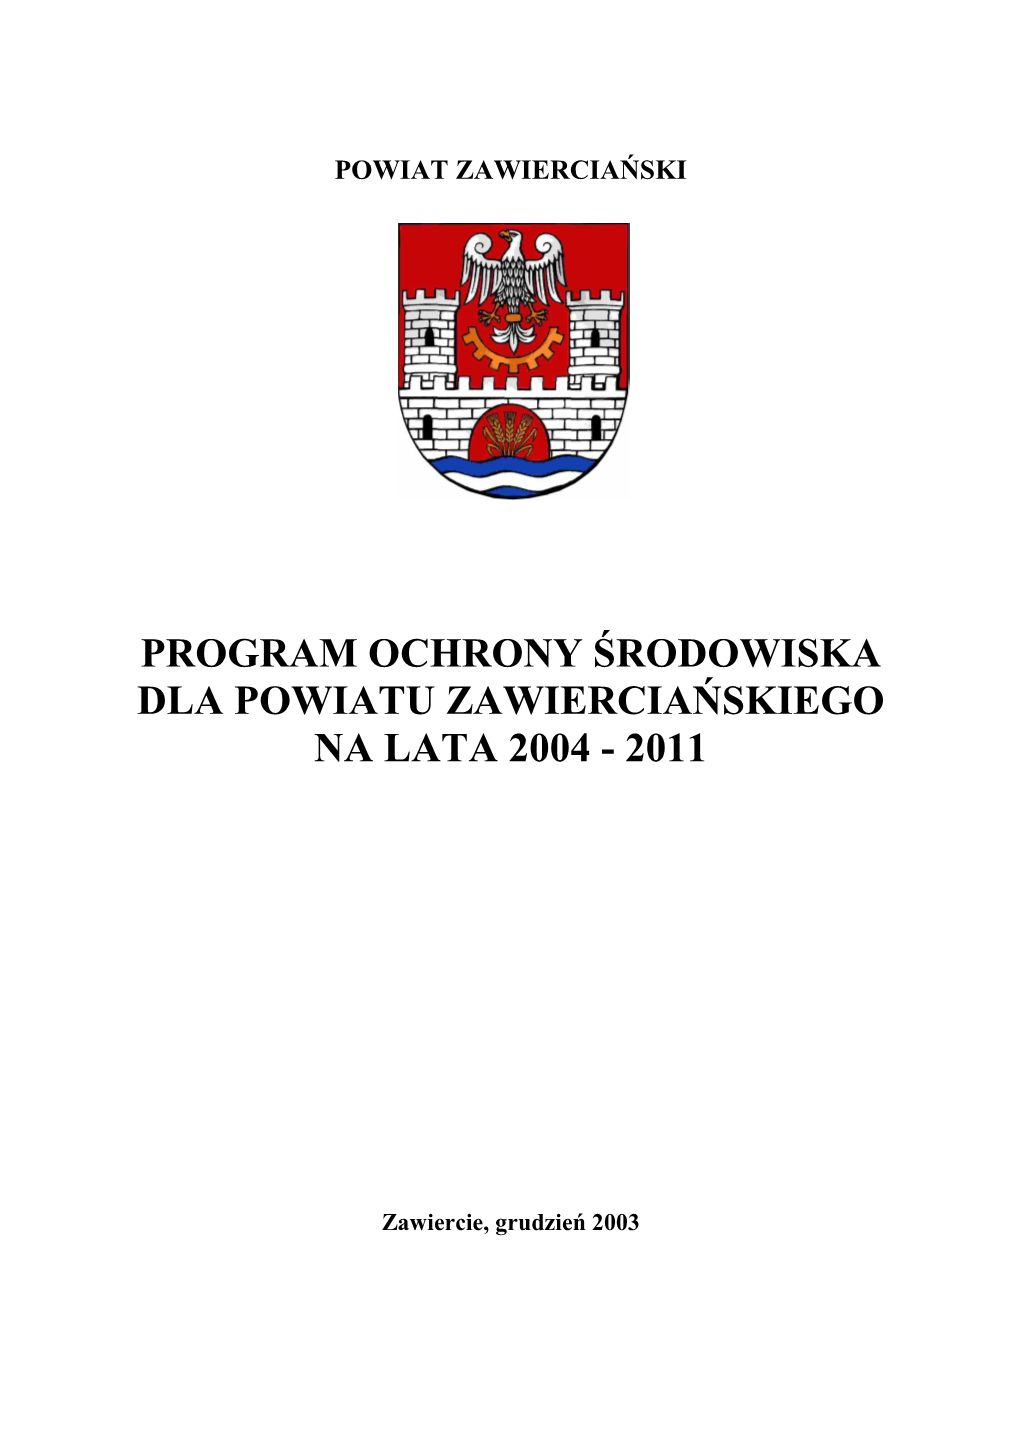 Program Ochrony Środowiska Dla Powiatu Zawiercia Ńskiego Na Lata 2004 - 2011